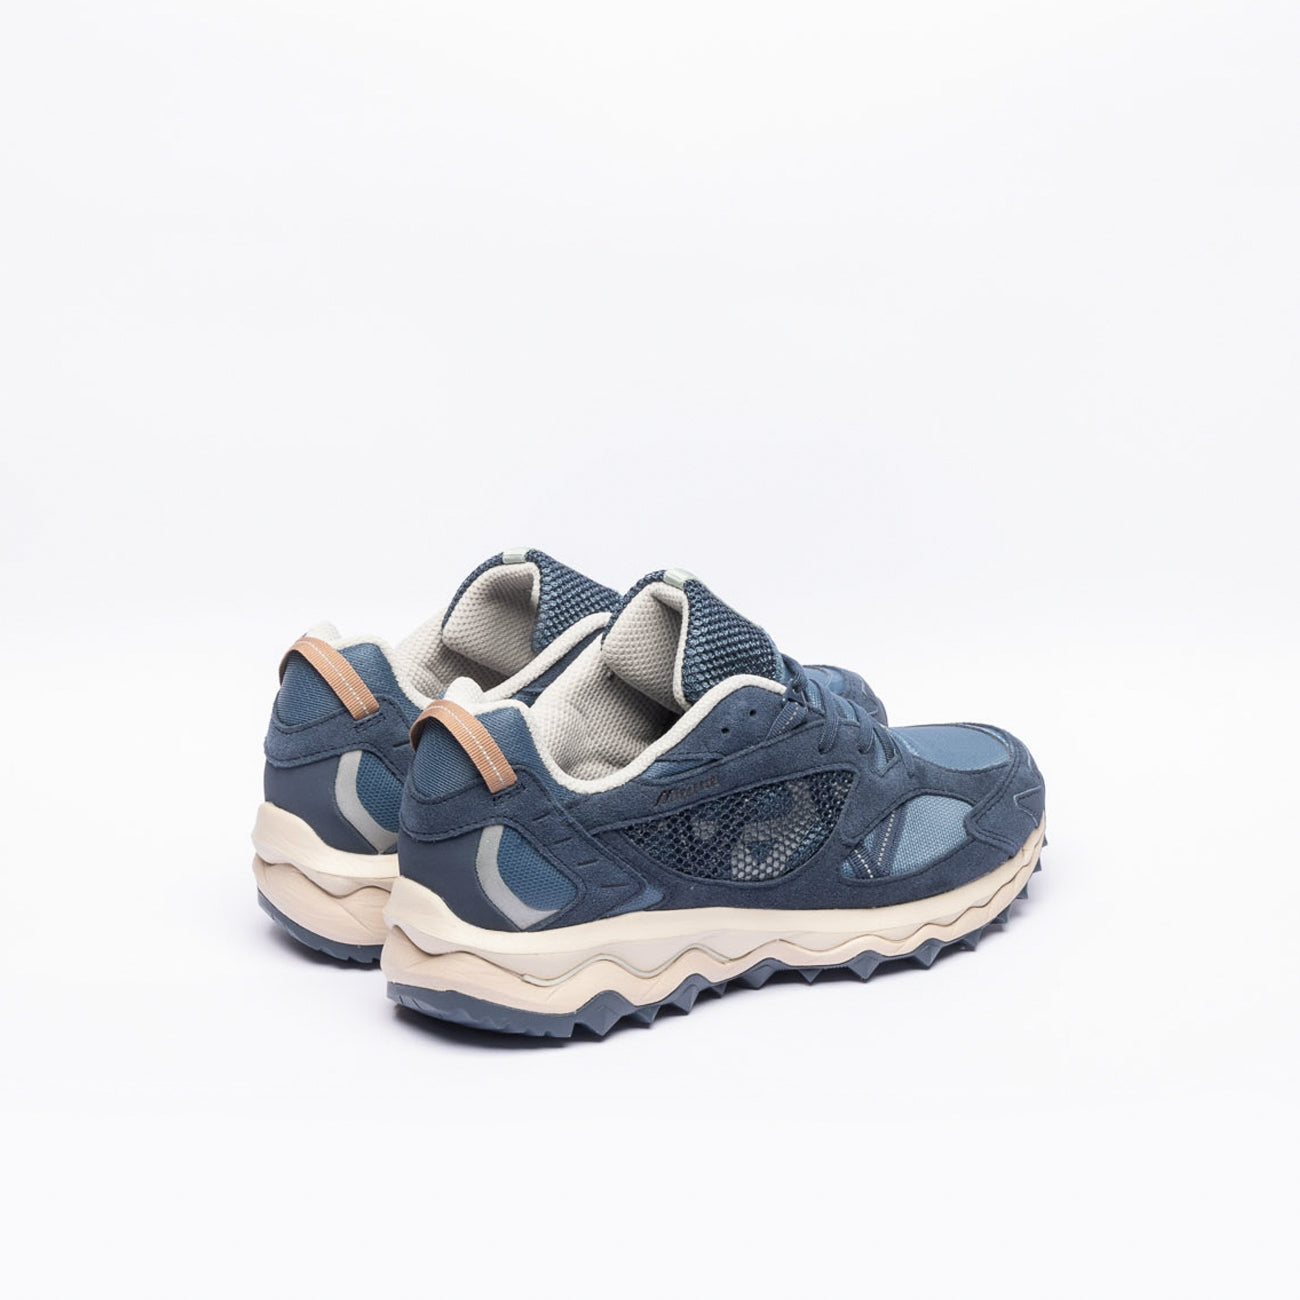 Sneaker trail running Mizuno Wave Mujin TL in camoscio e tessuto blu